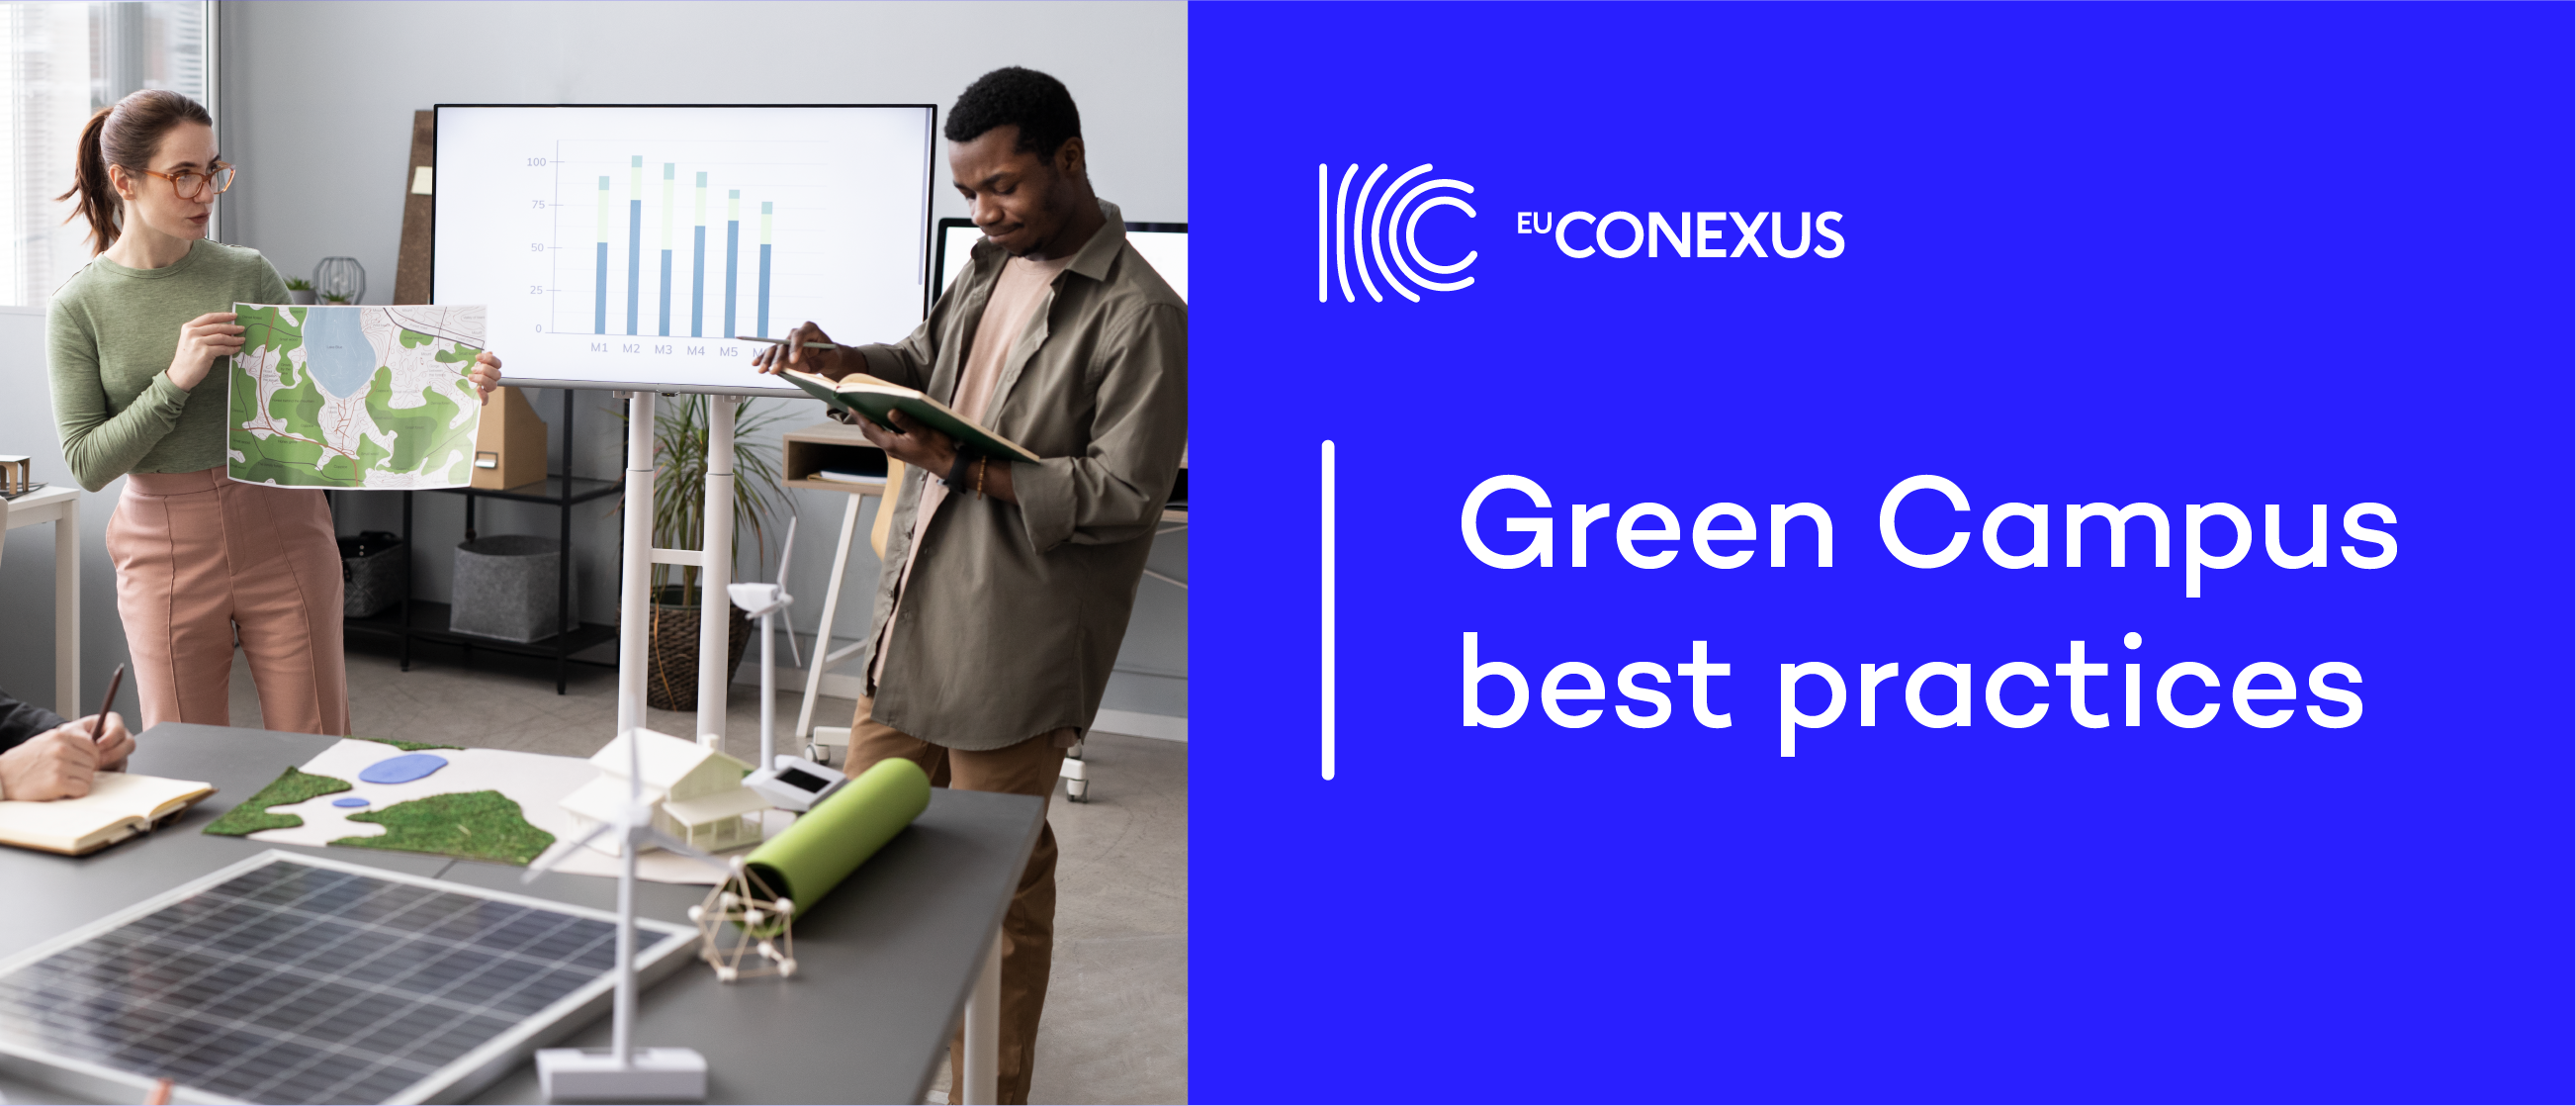 EU-CONEXUS presents Green Campus best practices